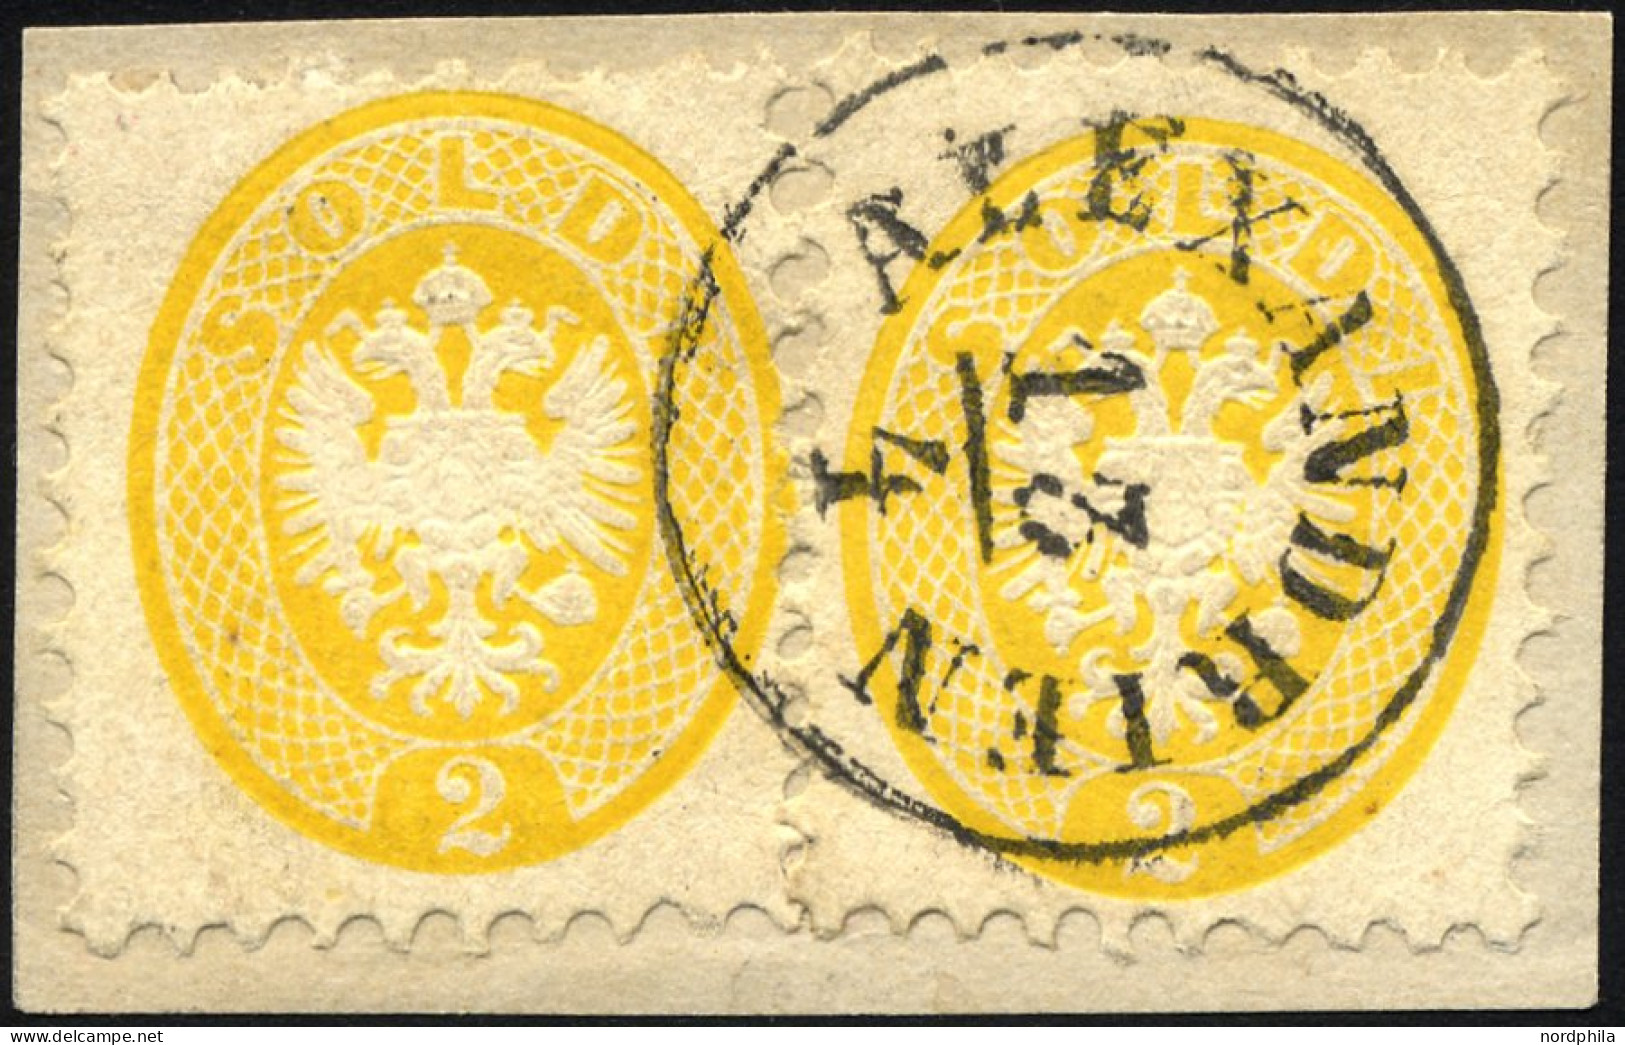 POST IN DER LEVANTE V 19 BrfStk, Vorläufer: 1864, 2 So. Gelb, 2x Auf Briefstück, K1 ALEXANDRIEN, Prachtbriefstück, Gepr. - Eastern Austria